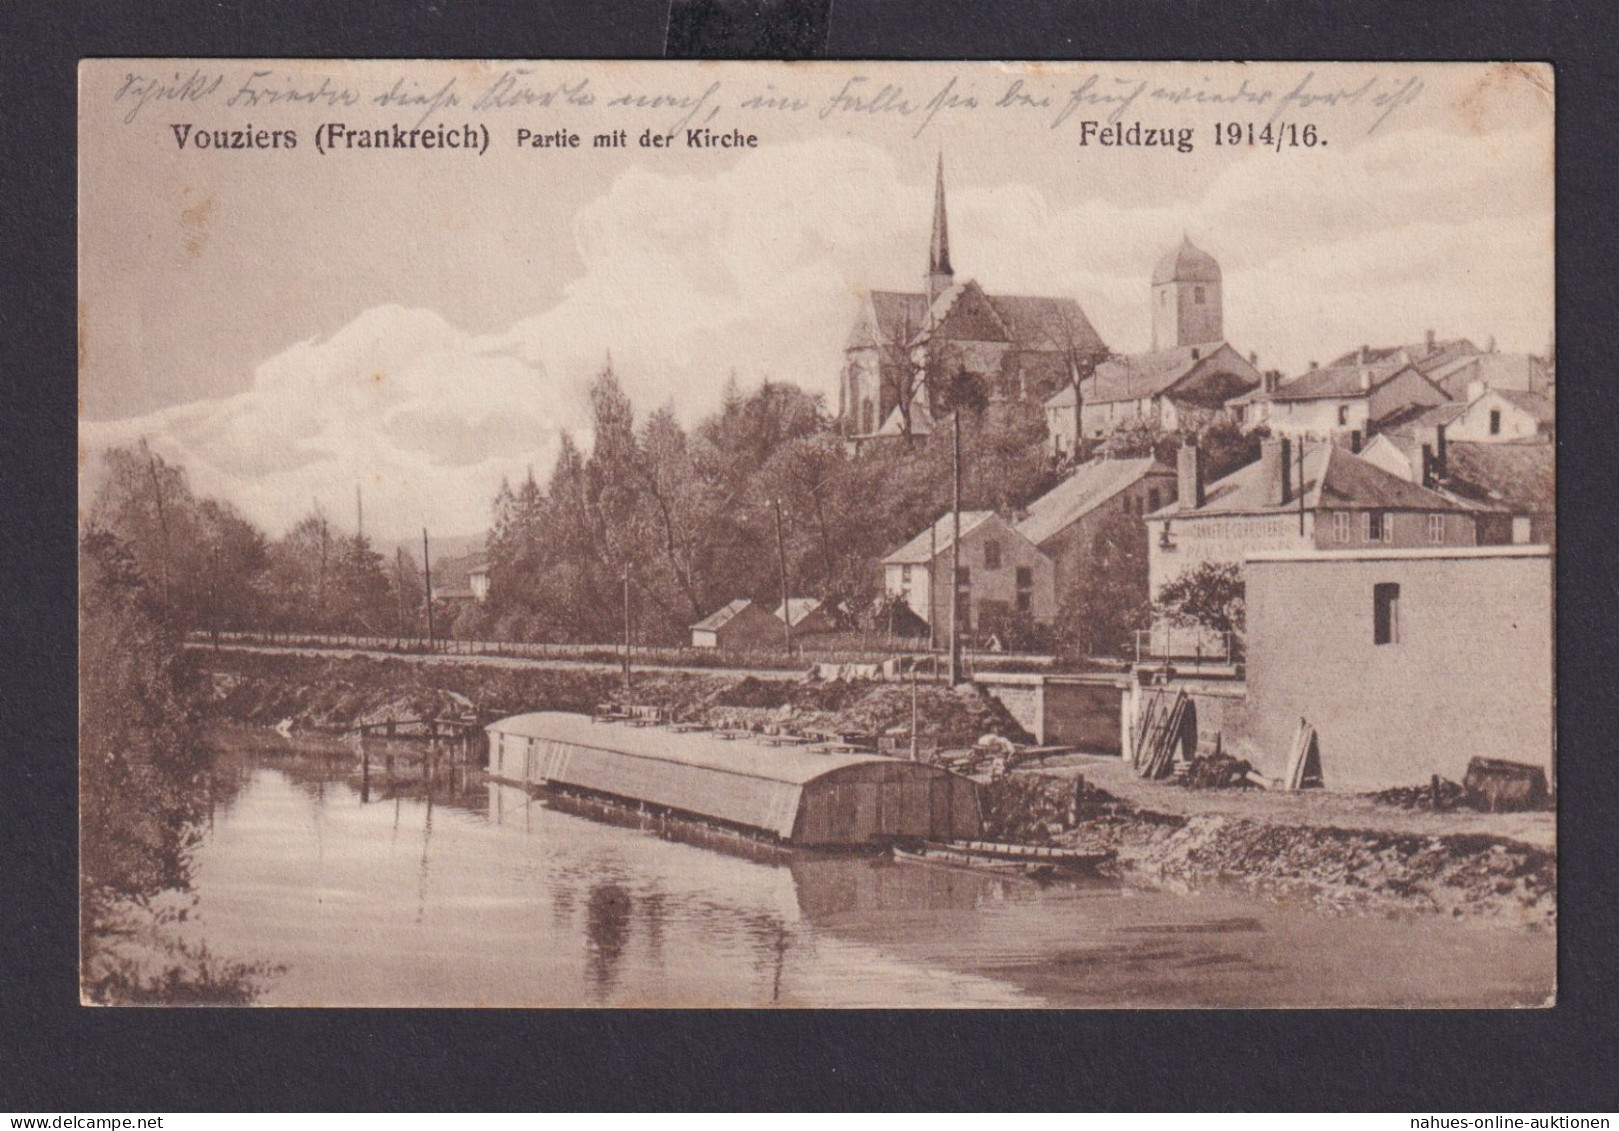 Ansichtskarte Vouziers Frankreich Partie M. Kirche Feldzug 1914/16 1. Weltkrieg - 1914-18